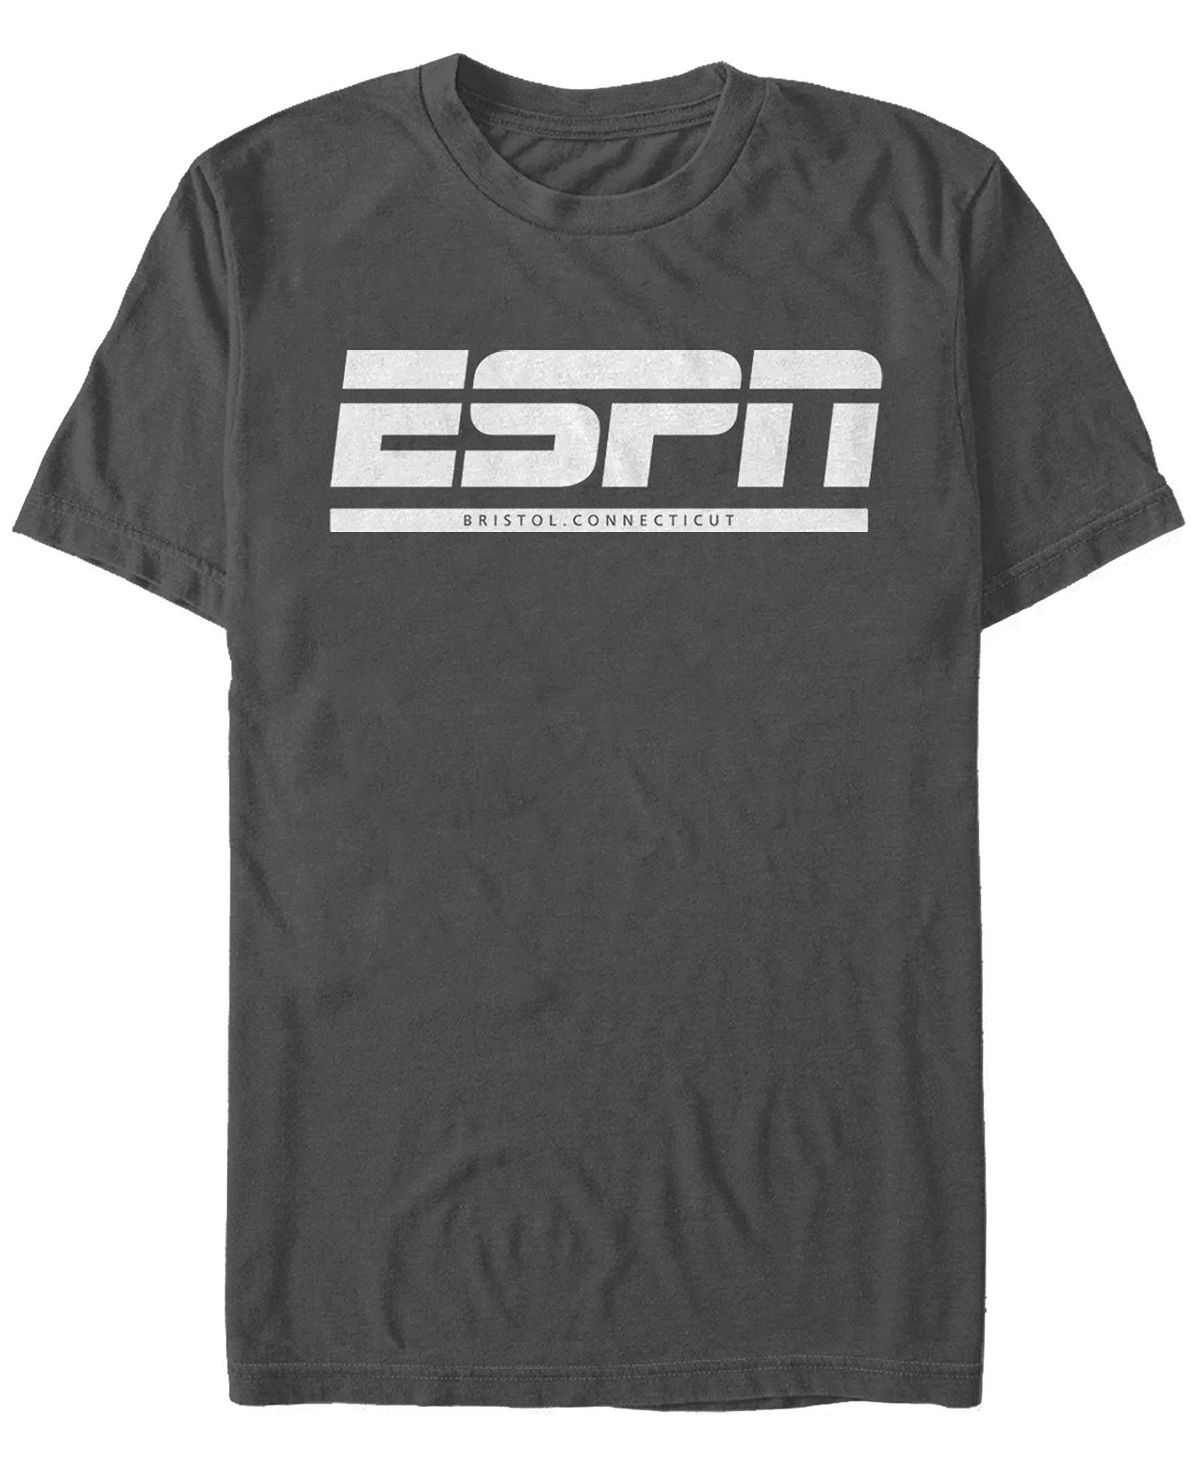 Мужская футболка ESPN Bristol с короткими рукавами и круглым вырезом Fifth Sun